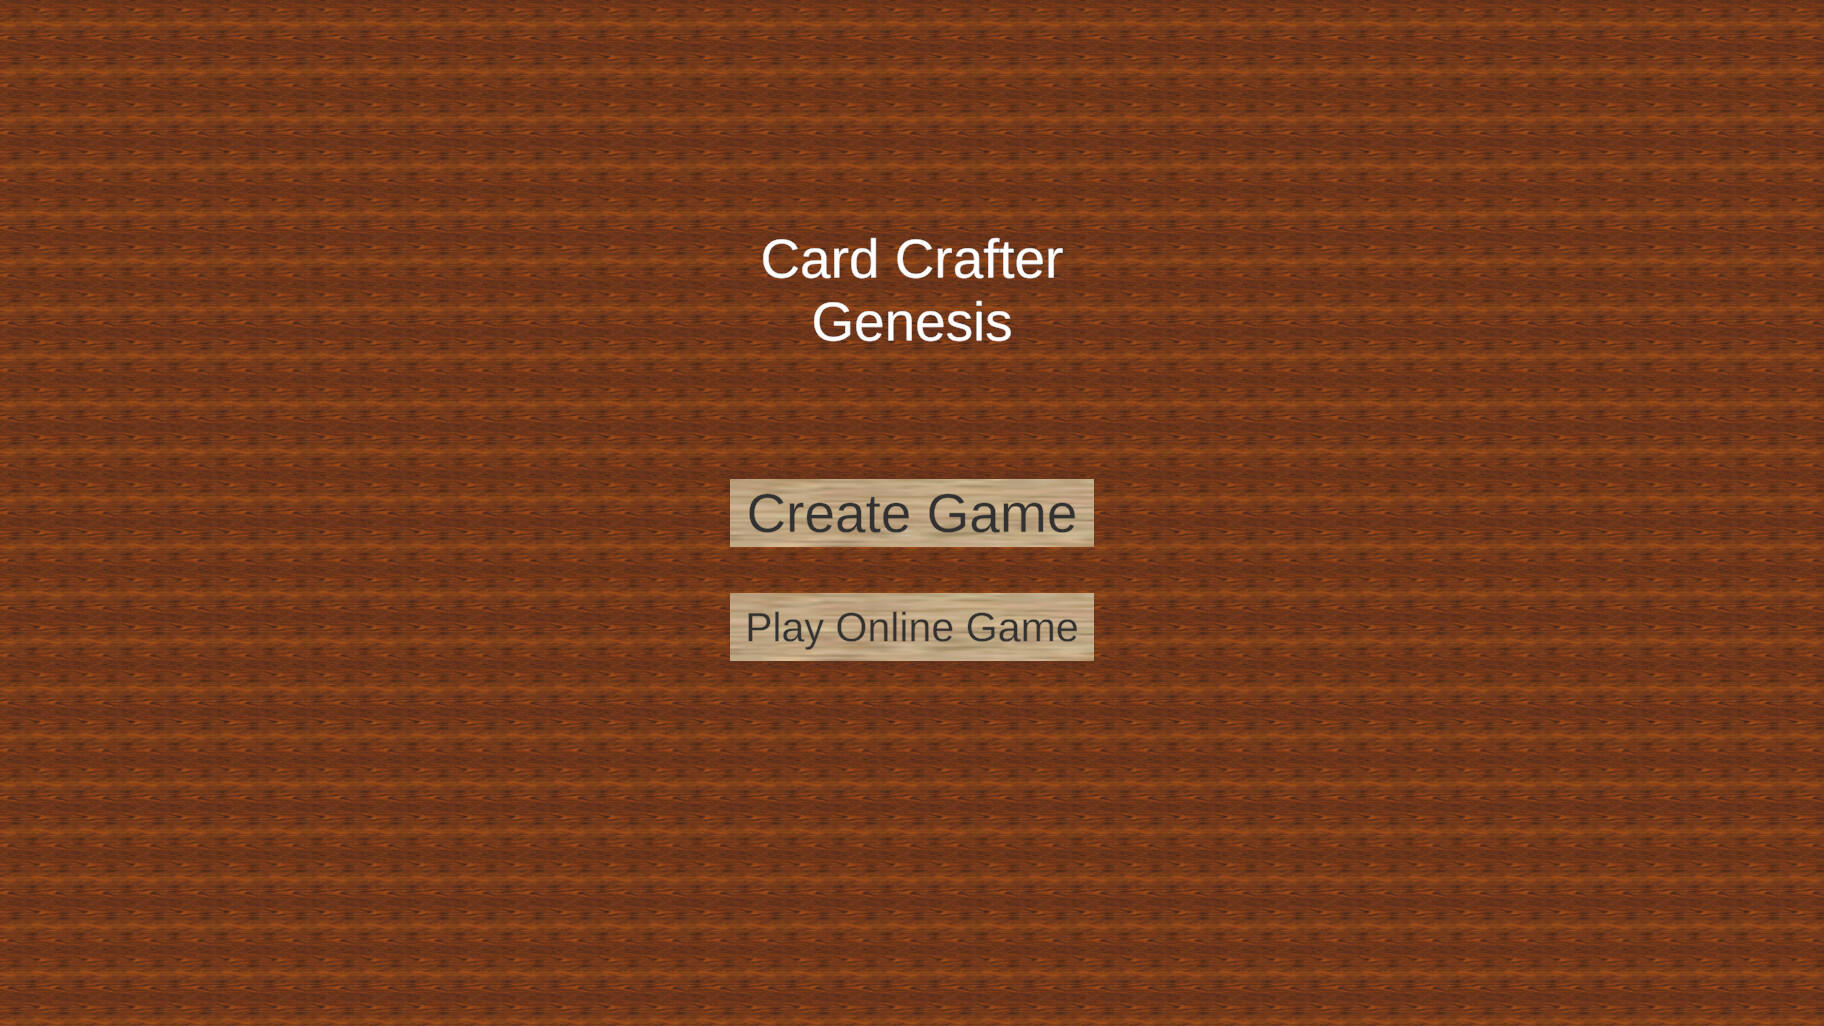 Screenshot 1 of कार्ड क्राफ्टर उत्पत्ति 